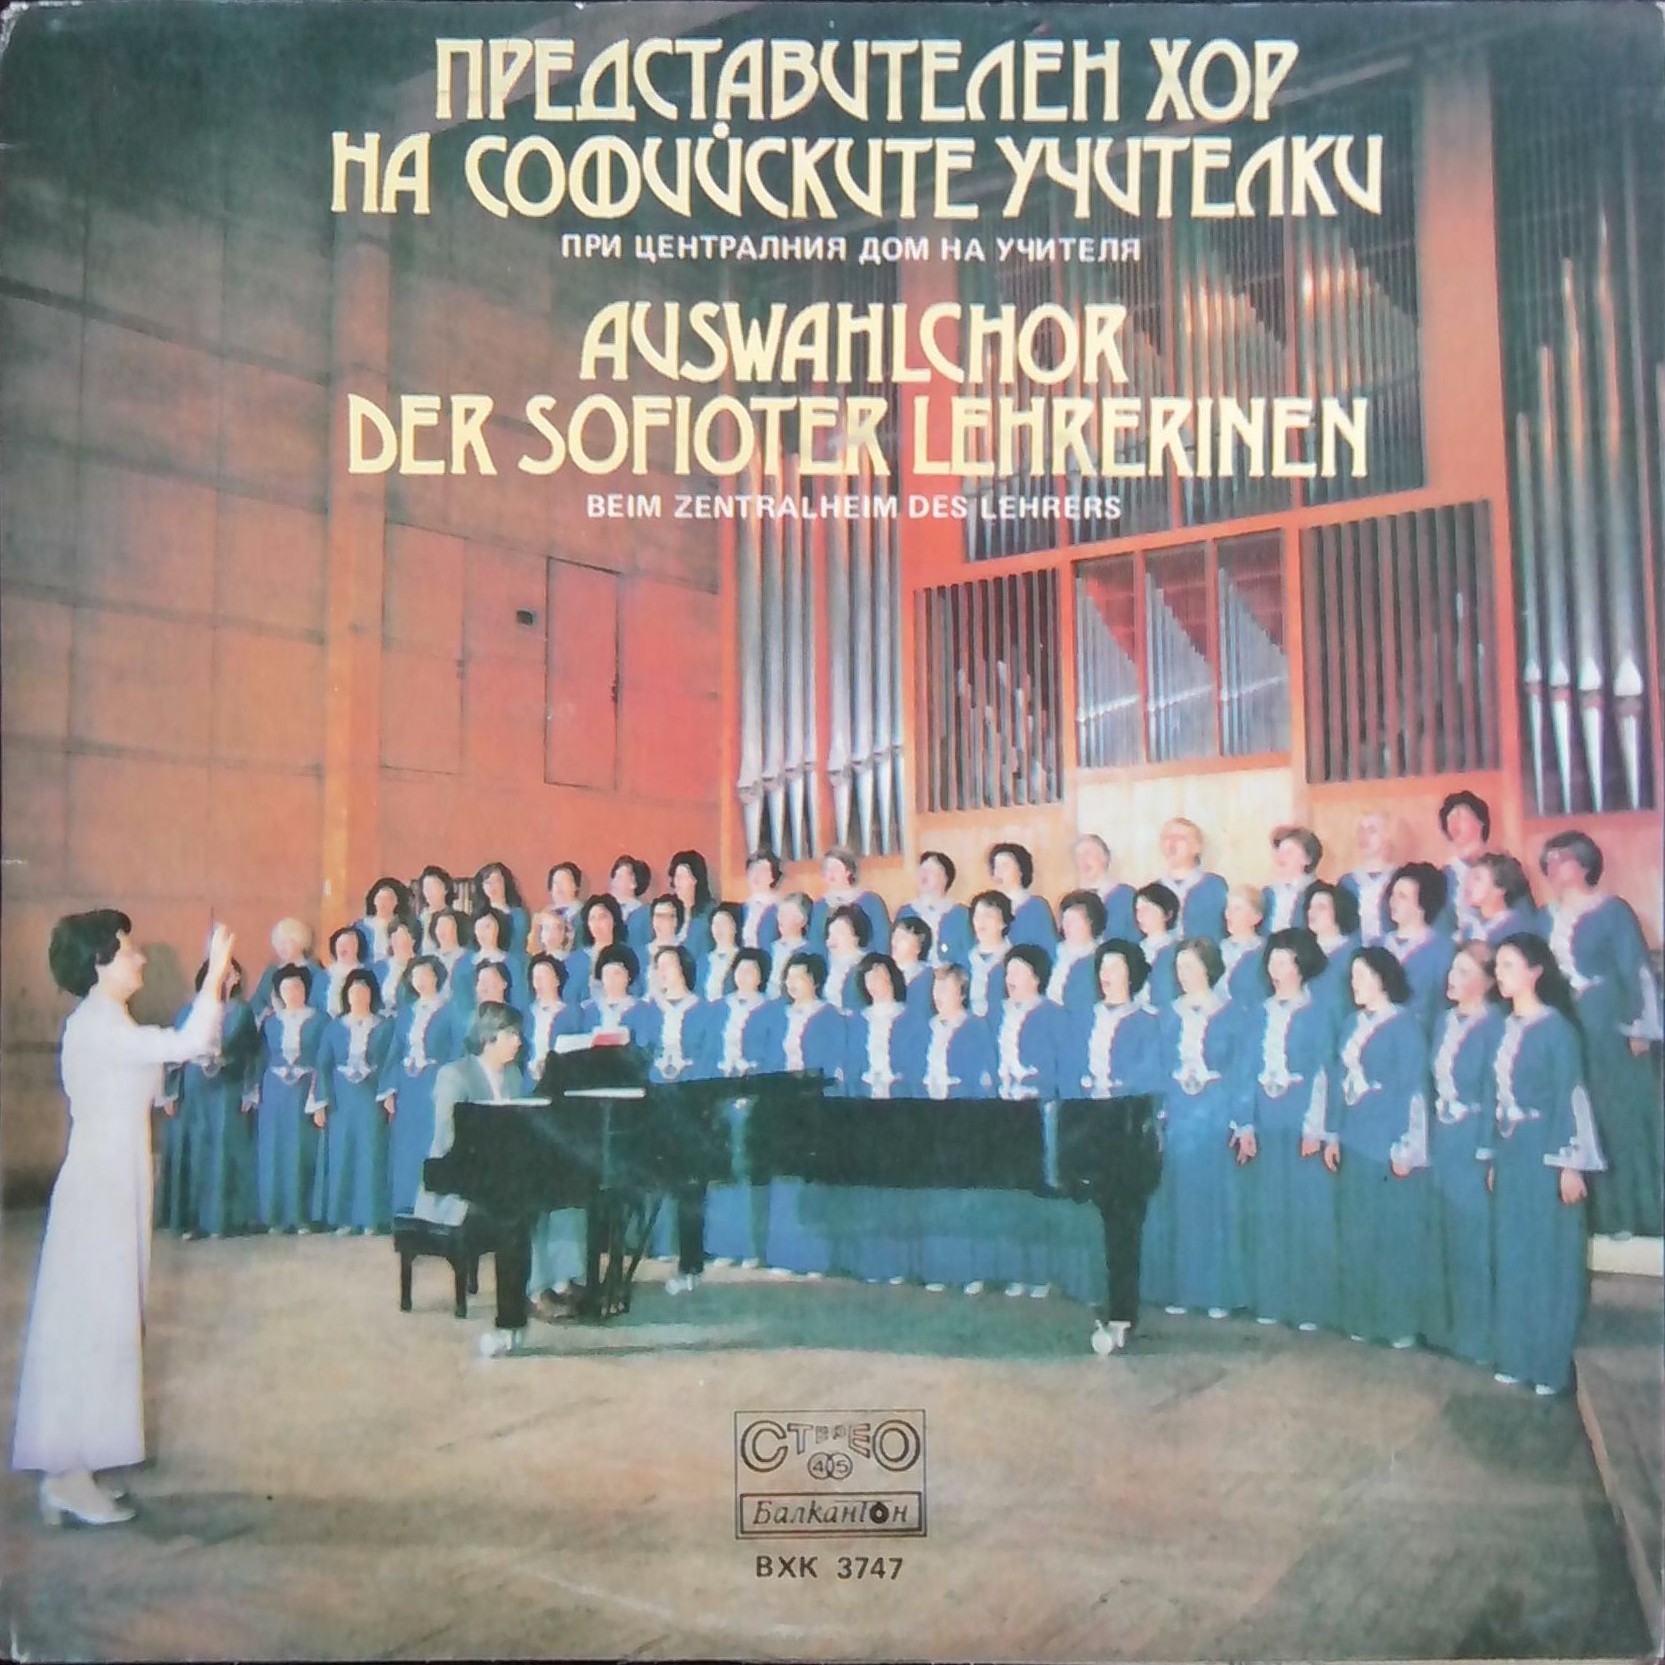 Представителен хор на софийските учителки при Централния дом на учителя